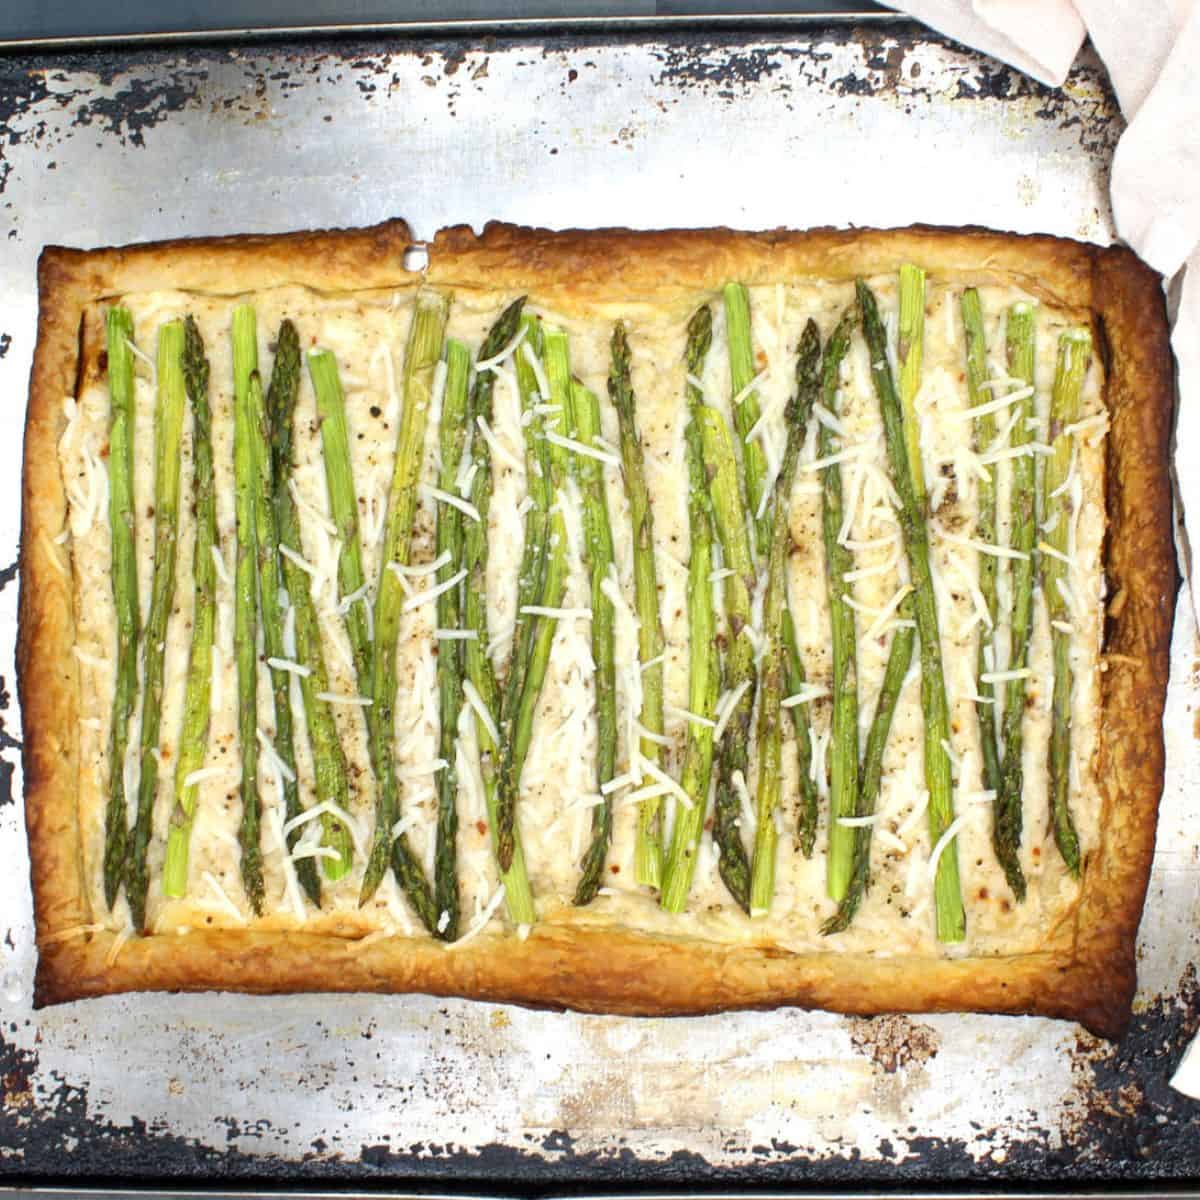 Baked vegan asparagus pizza on baking sheet.